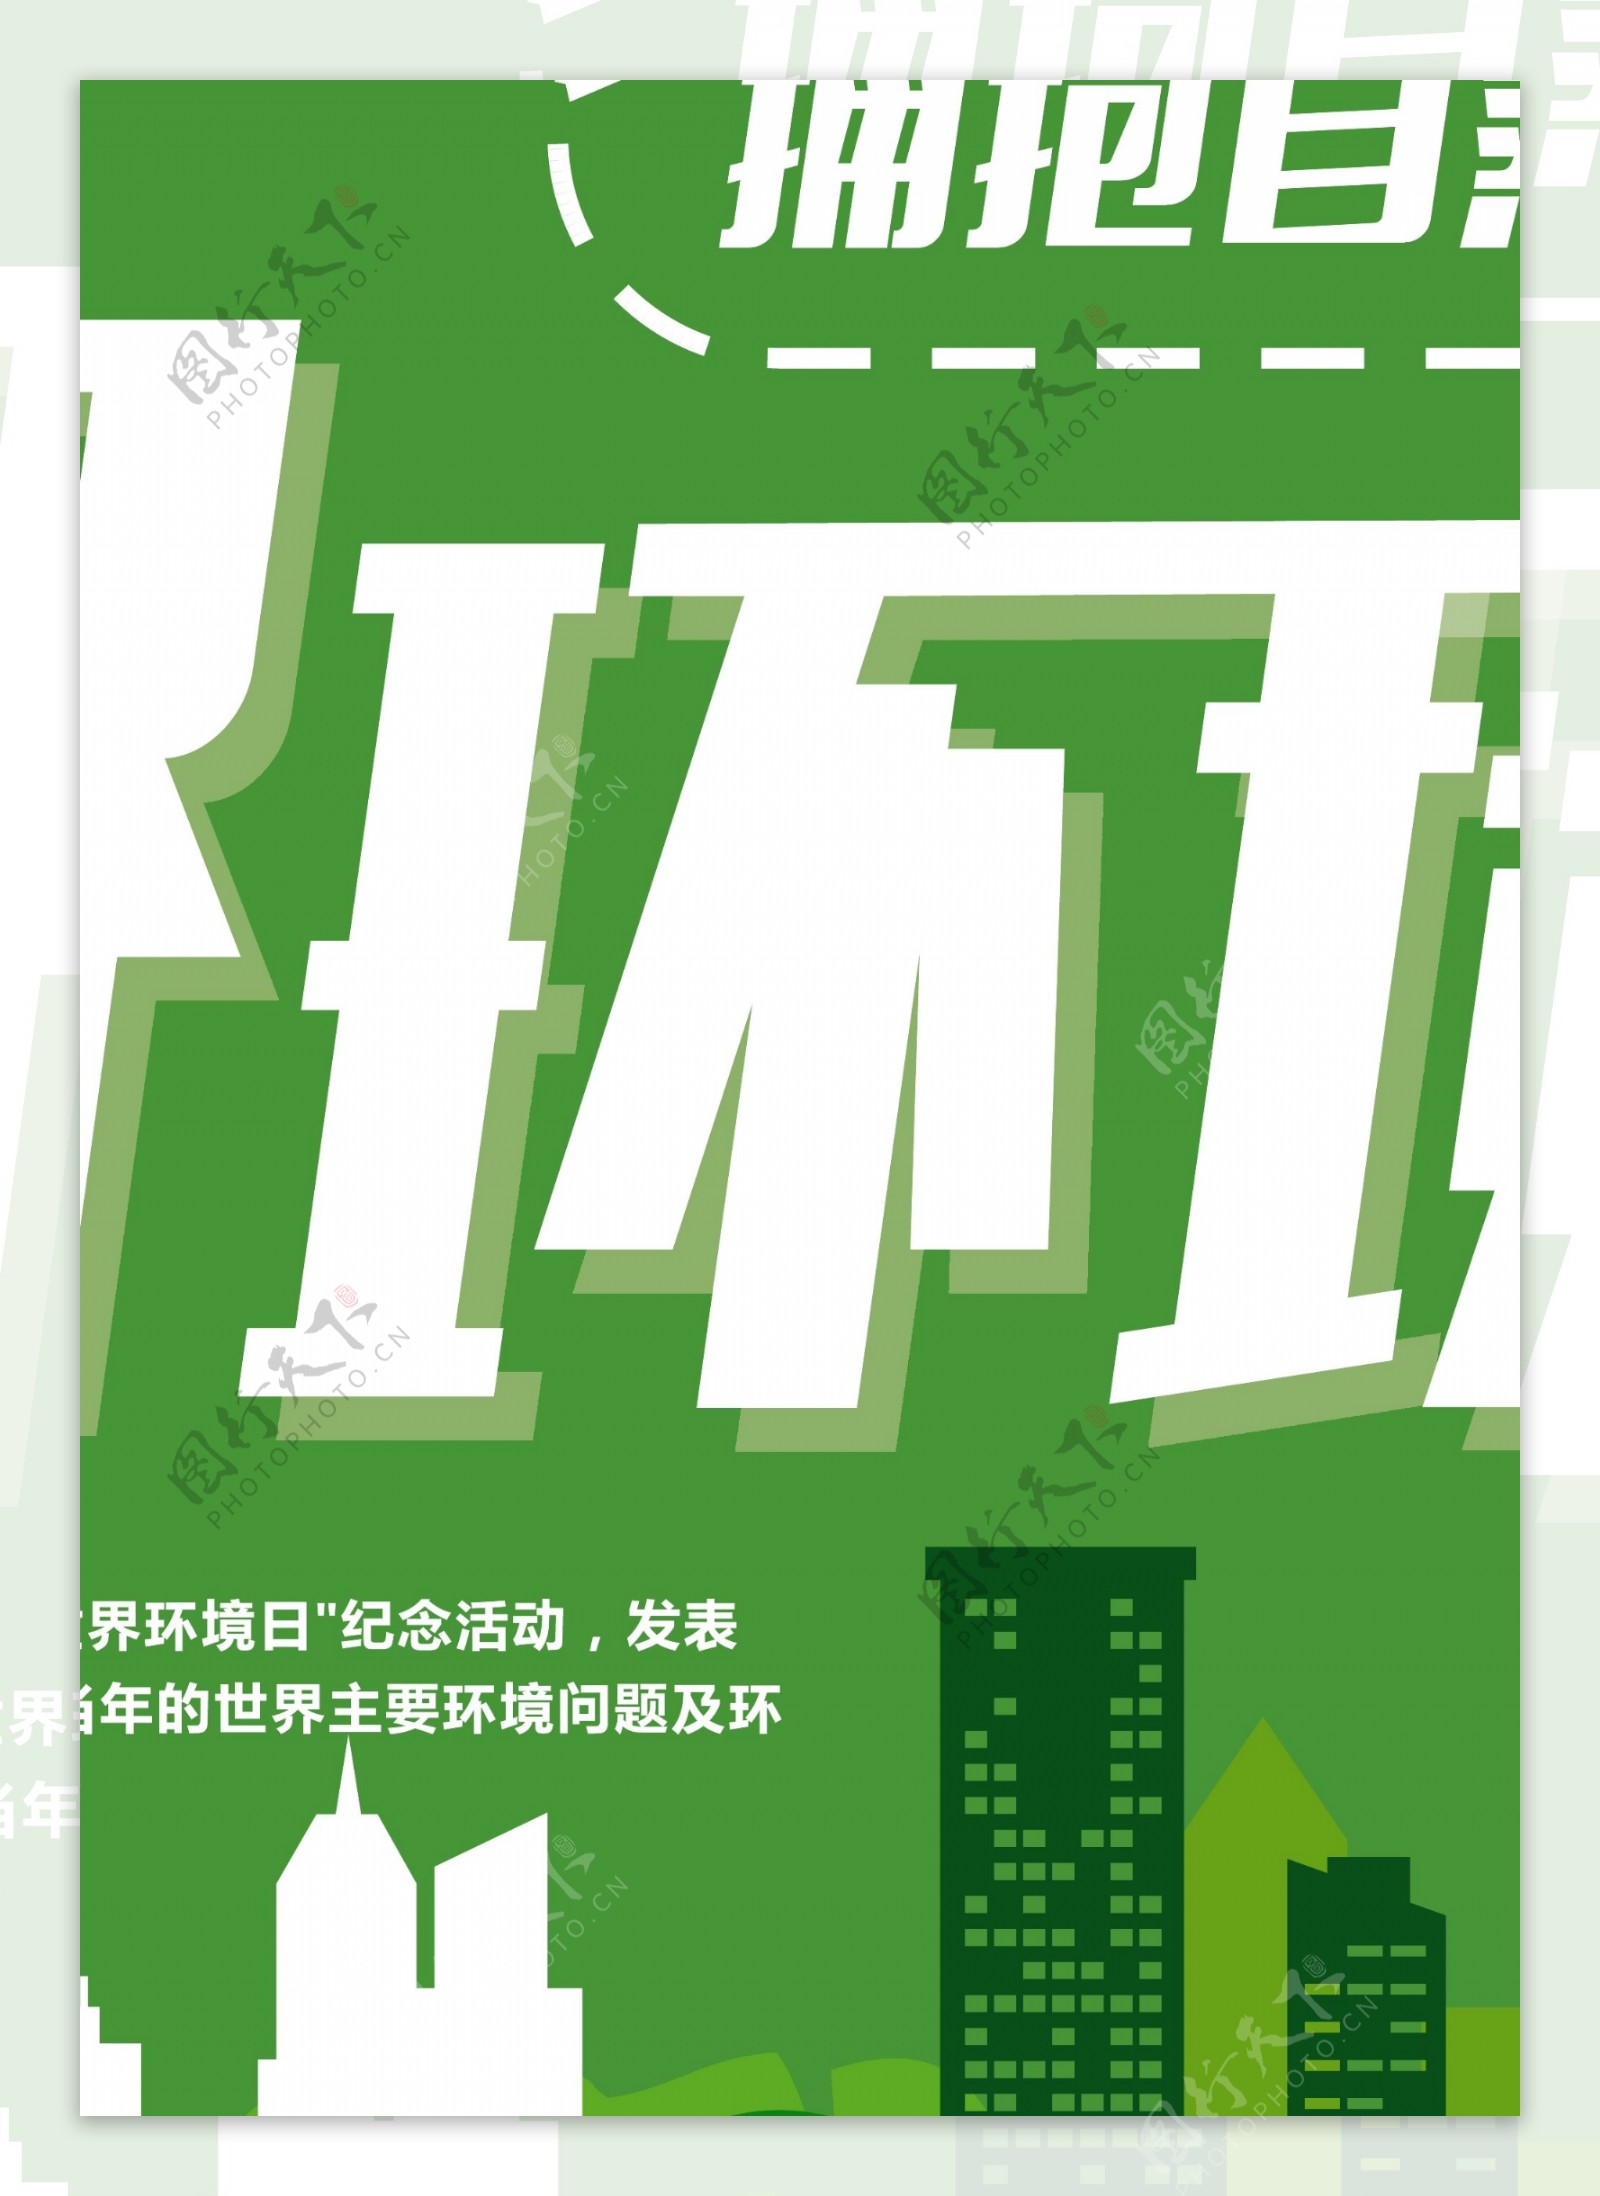 绿色世界环境日环保日公益海报设计